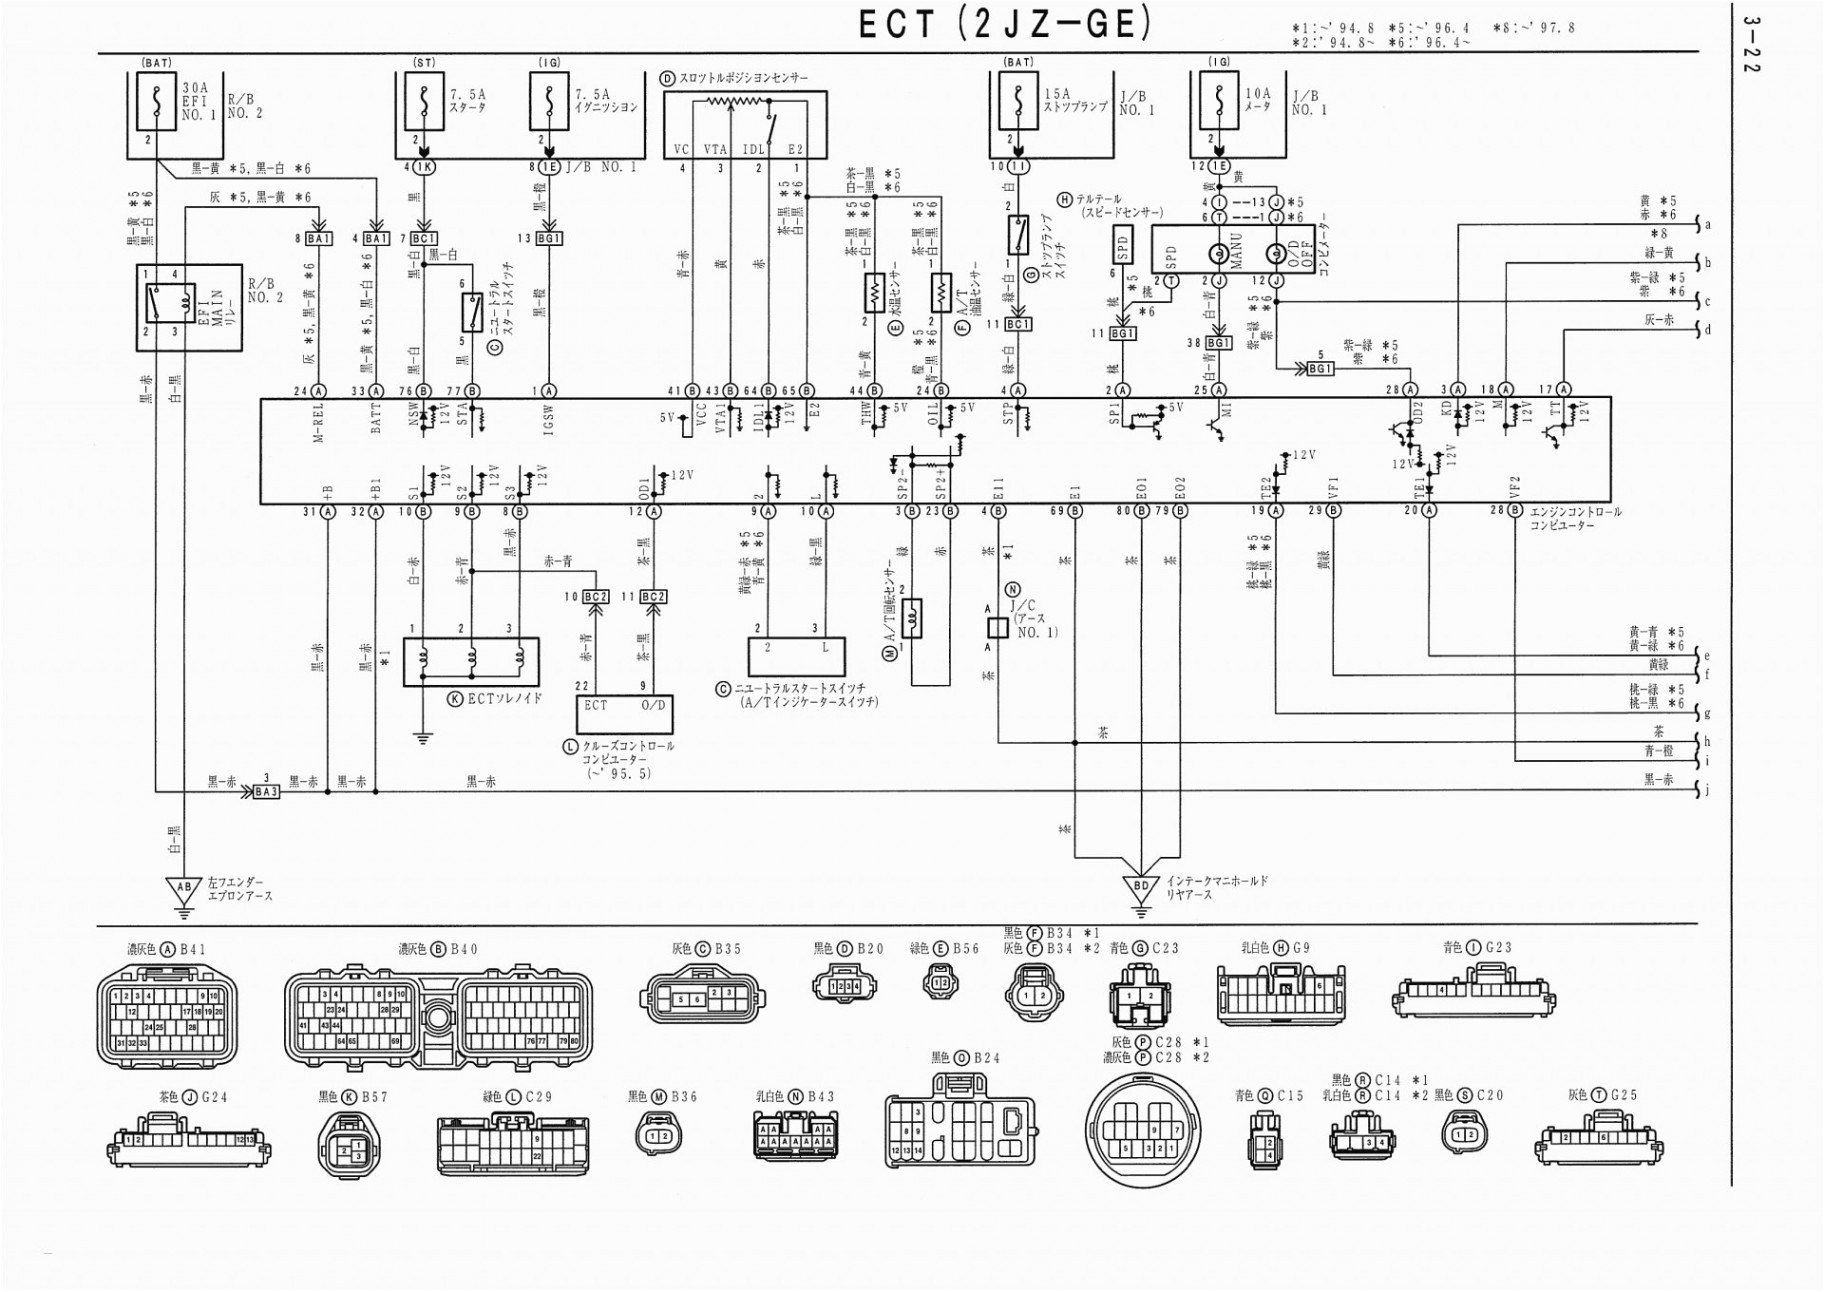 lan network wiring diagram wiring diagram databasenetwork wiring diagram